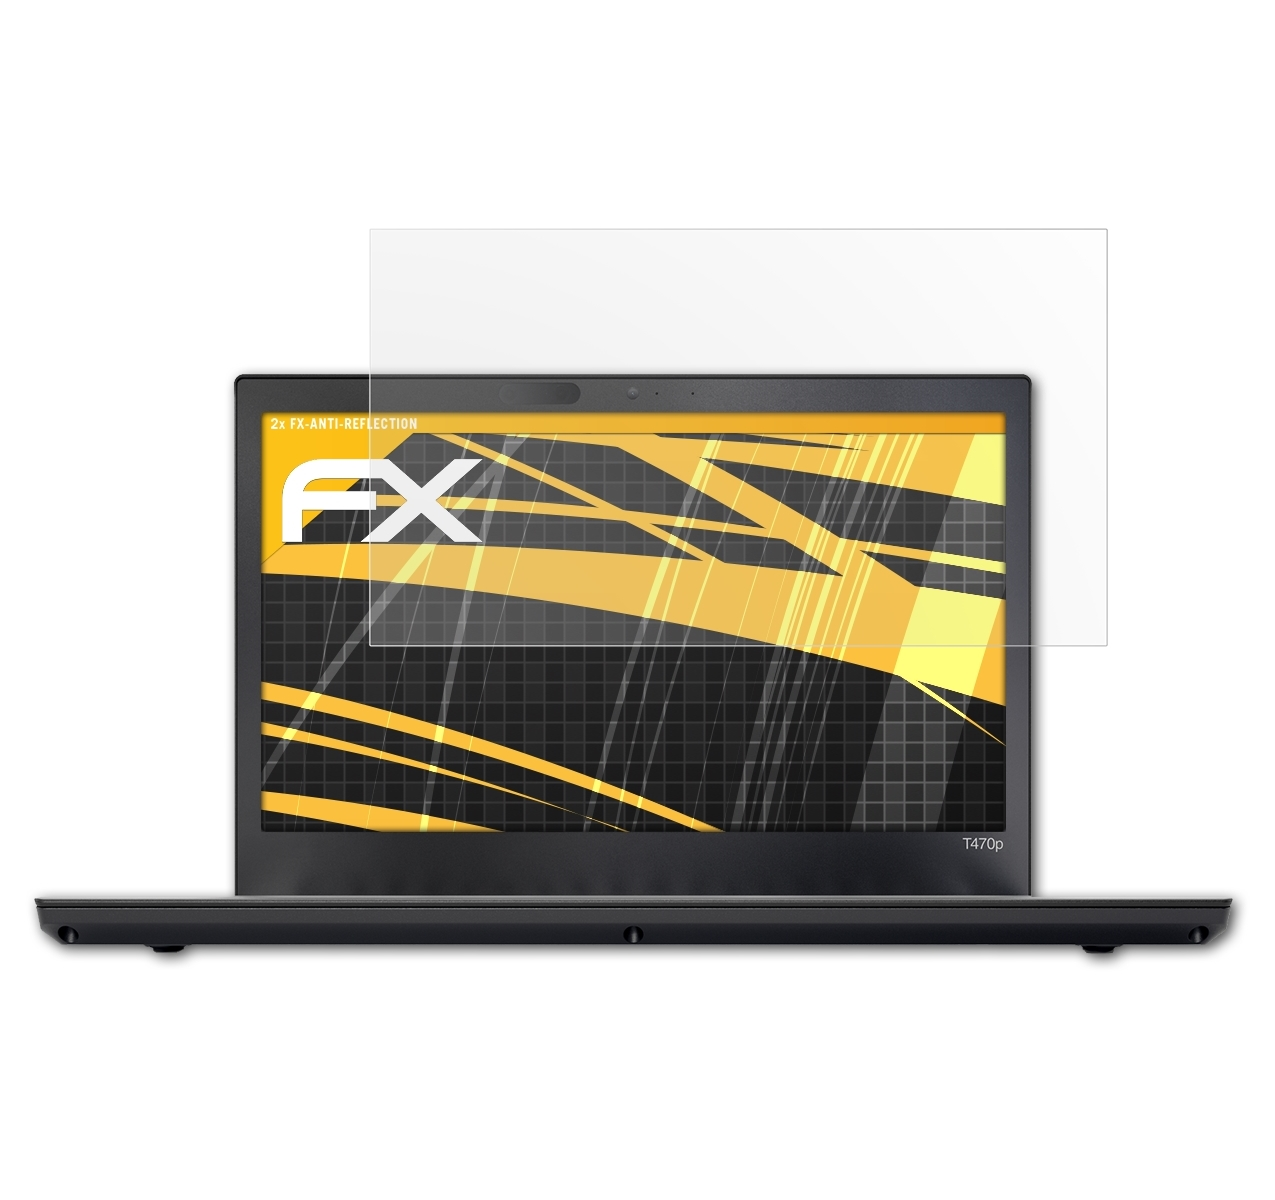 T470P) FX-Antireflex Lenovo 2x ATFOLIX ThinkPad Displayschutz(für